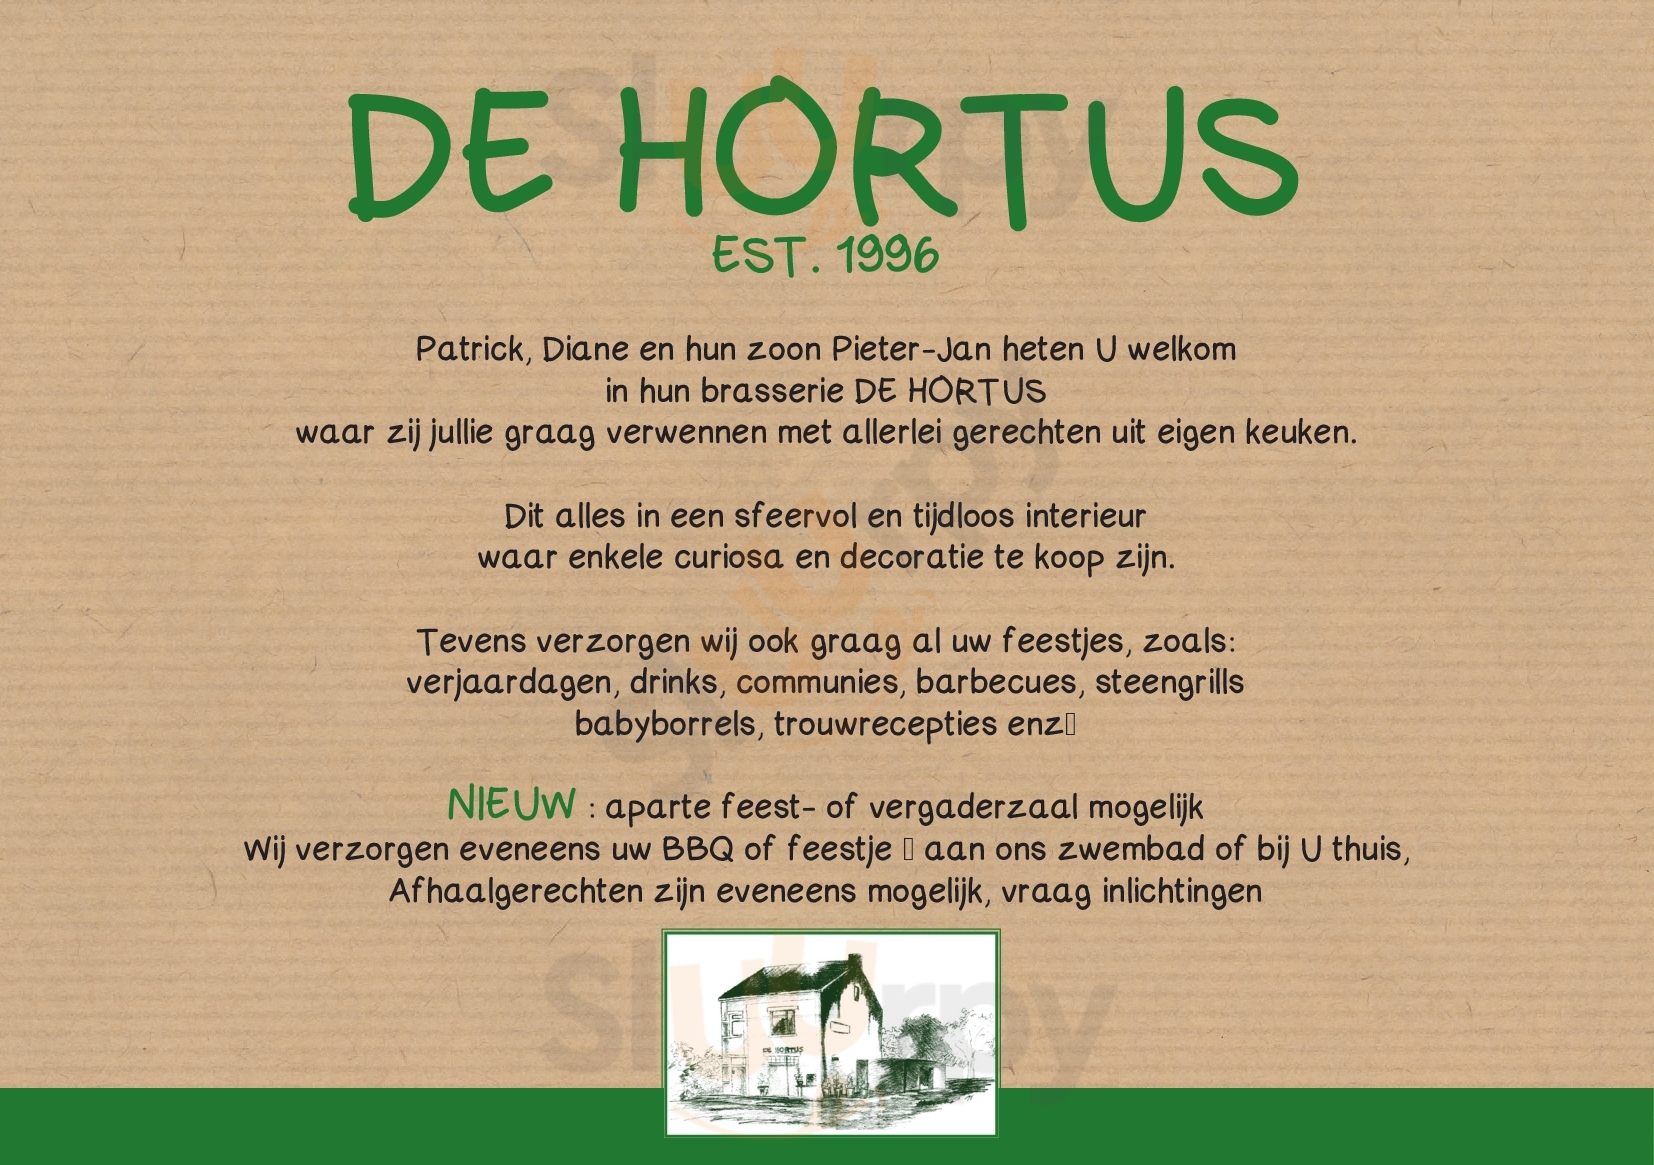 De Hortus Zonhoven Menu - 1